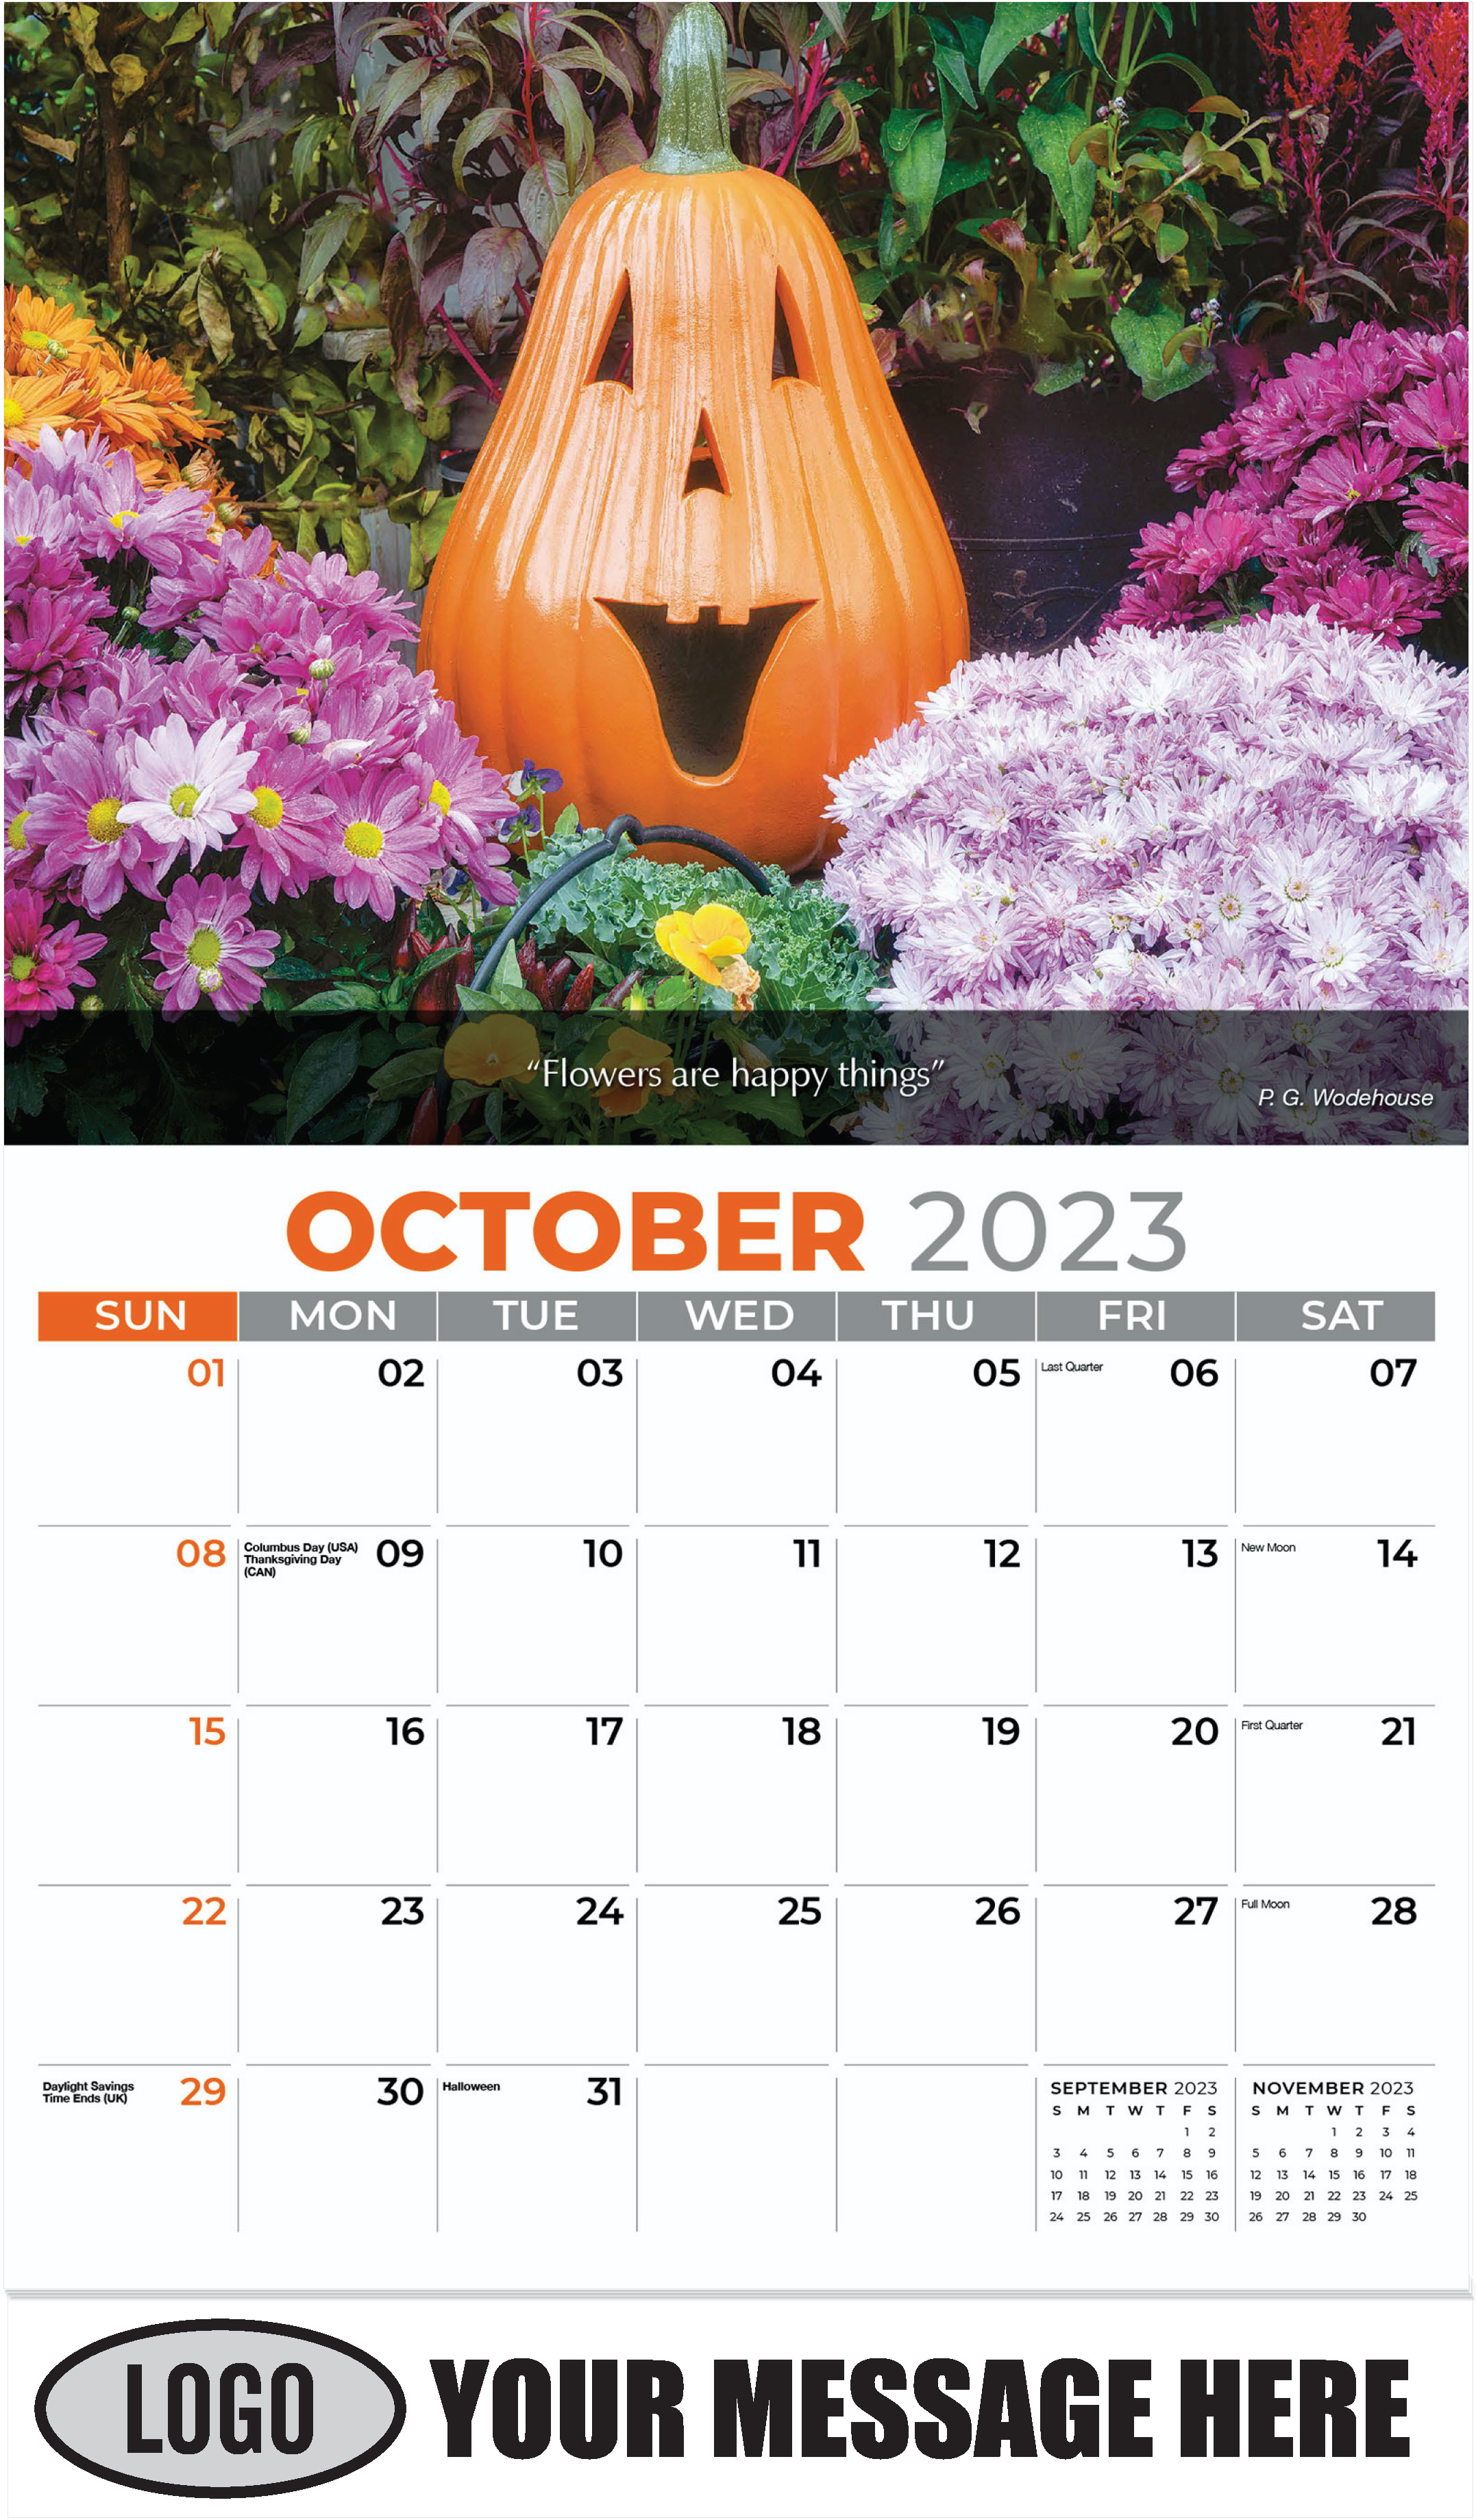 Pumpkin and Mum Flowers - October - Flowers & Gardens 2023 Promotional Calendar